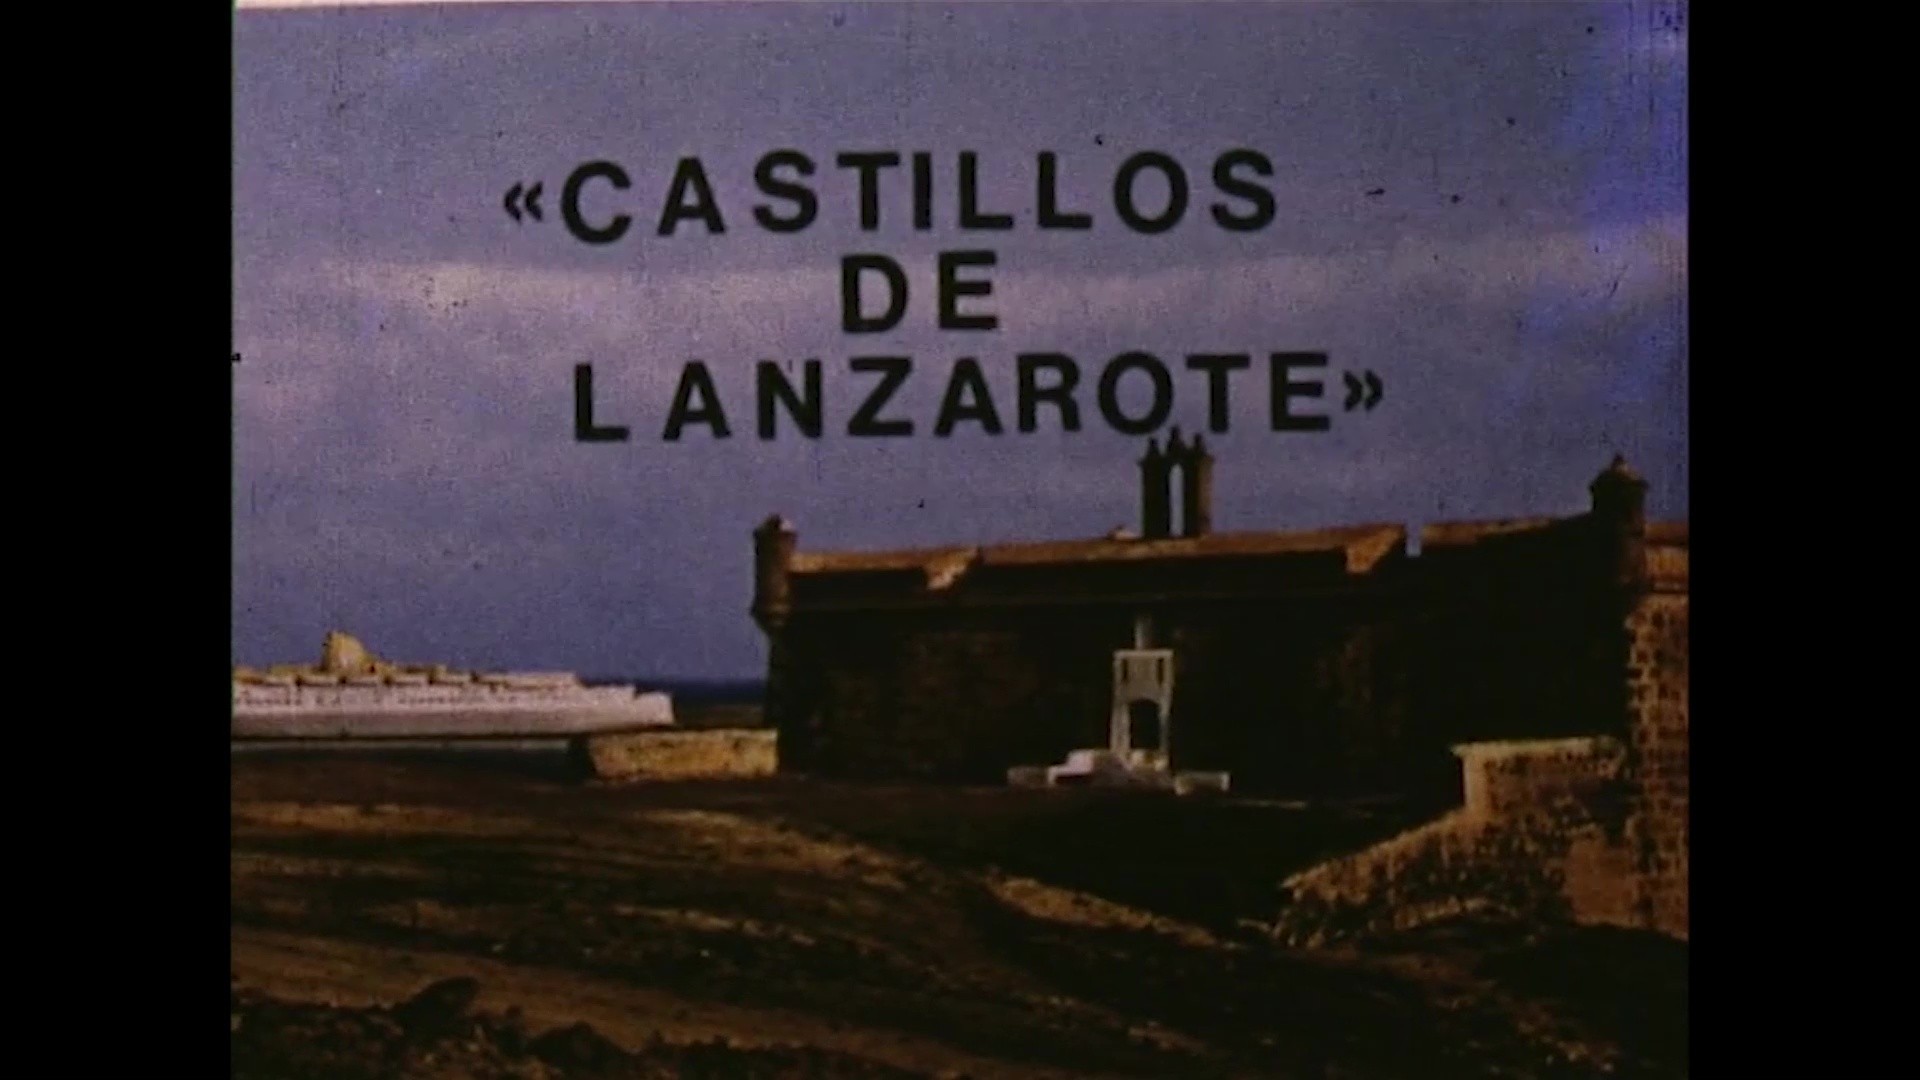 Castillos de Lanzarote (c. 1975)